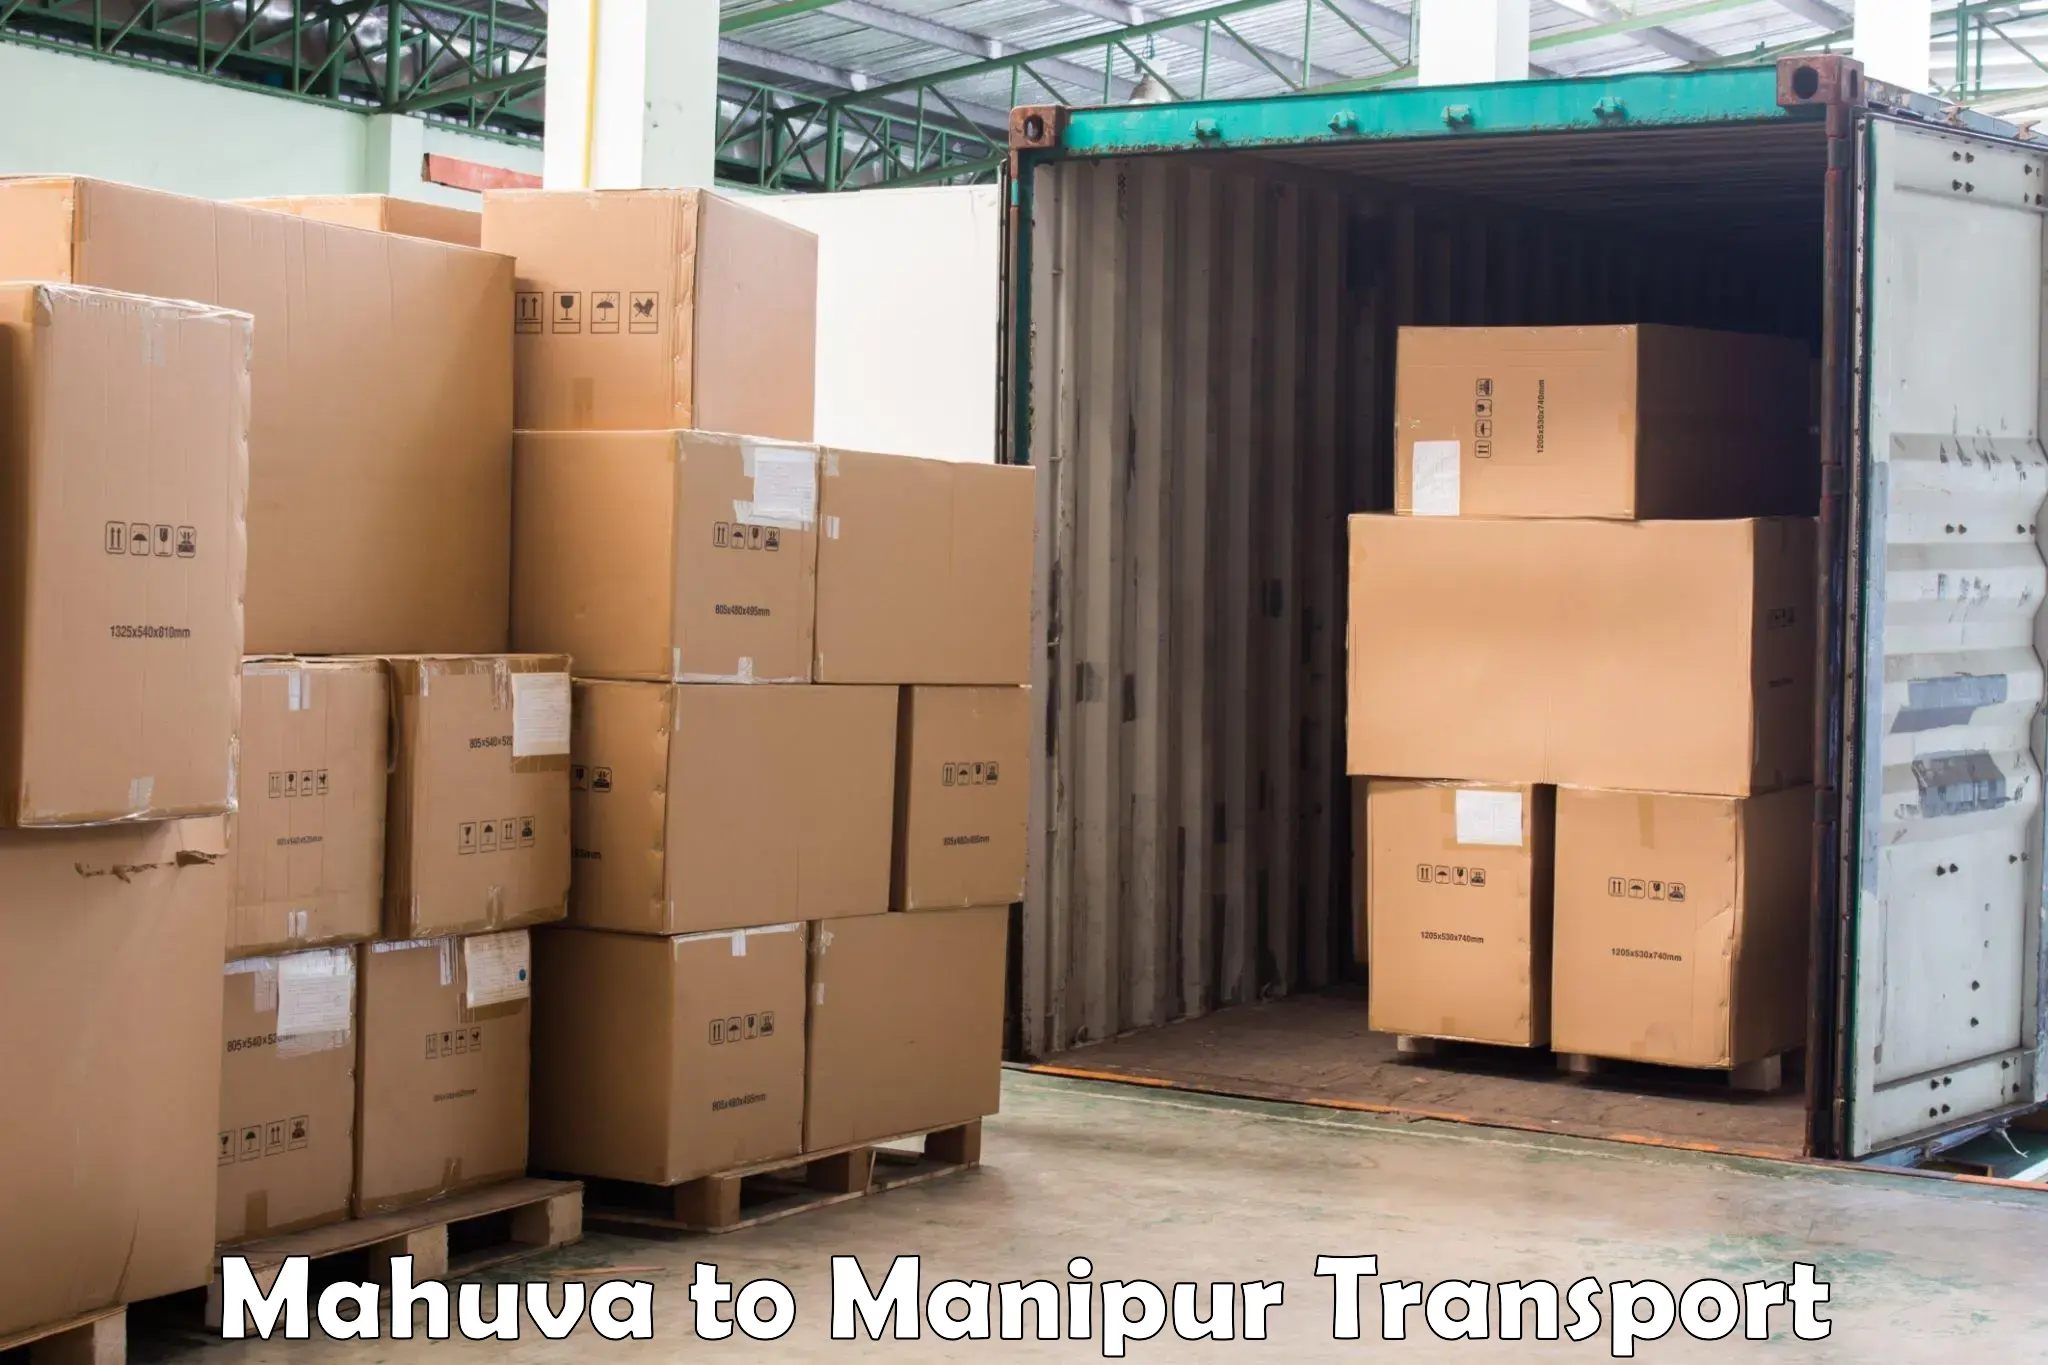 Commercial transport service Mahuva to Kanti